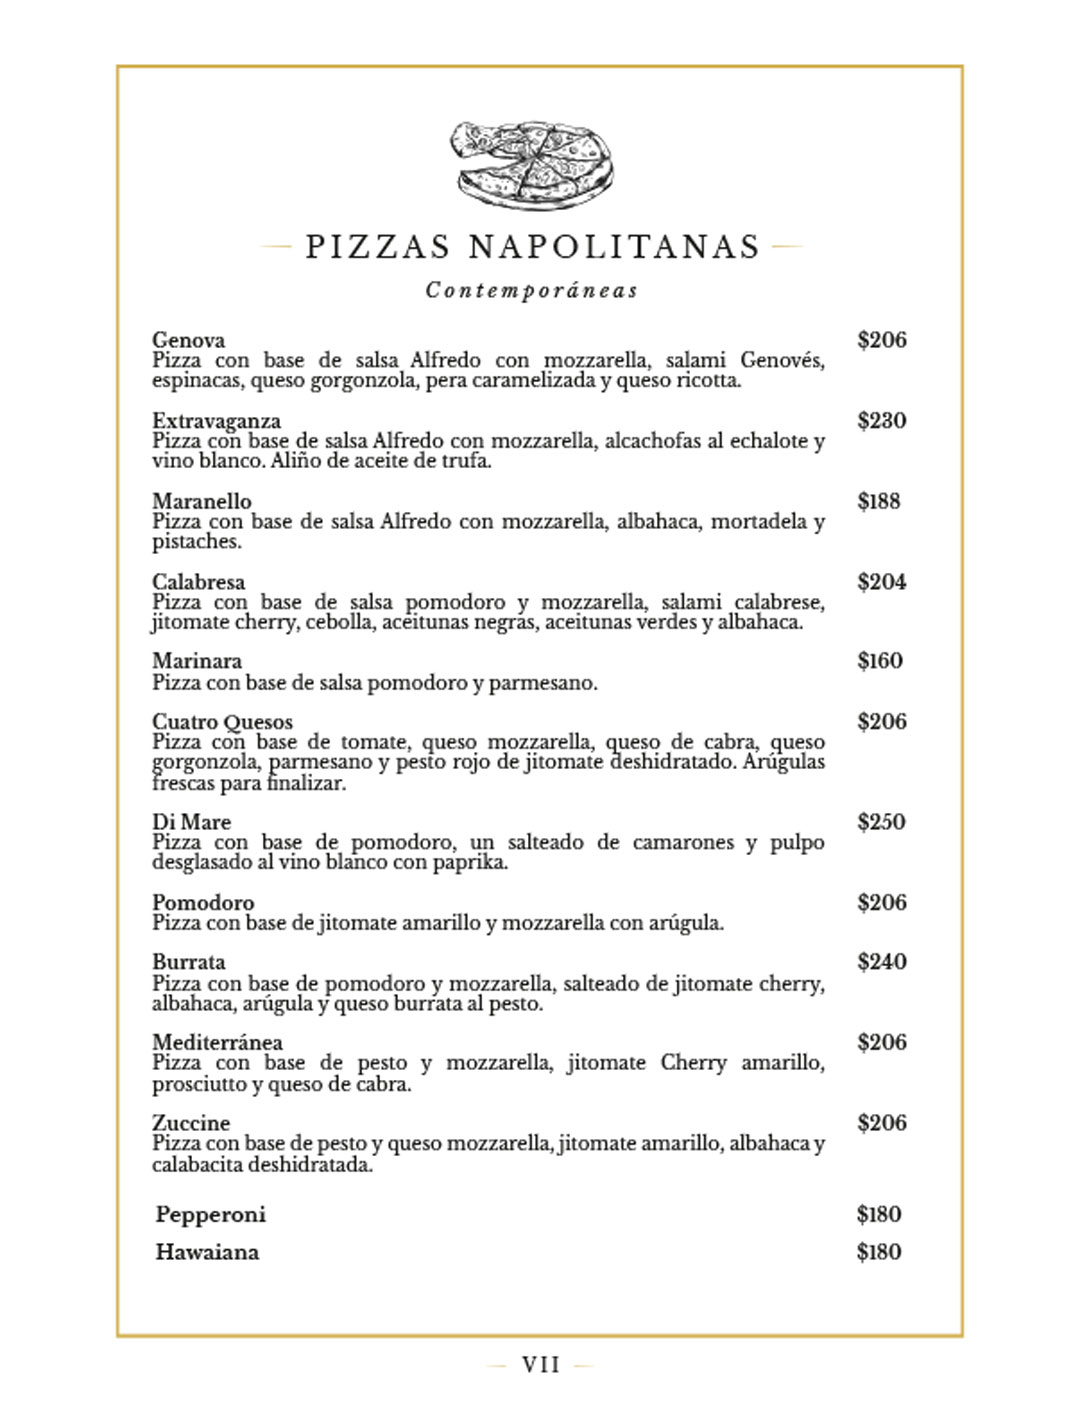 VII-Pizzas-Napolitanas